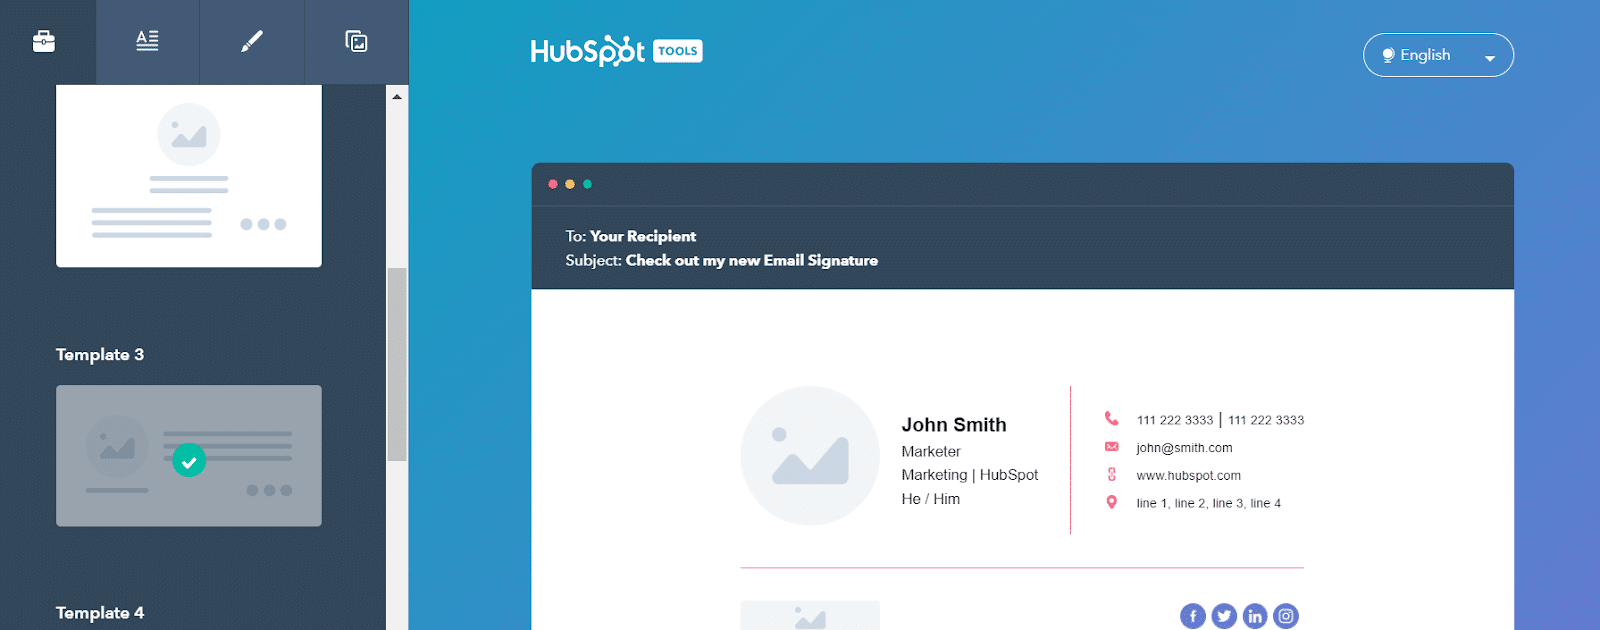 I colori del branding email di HubSpot sono il blu scuro e sottili linee di separazione arancioni